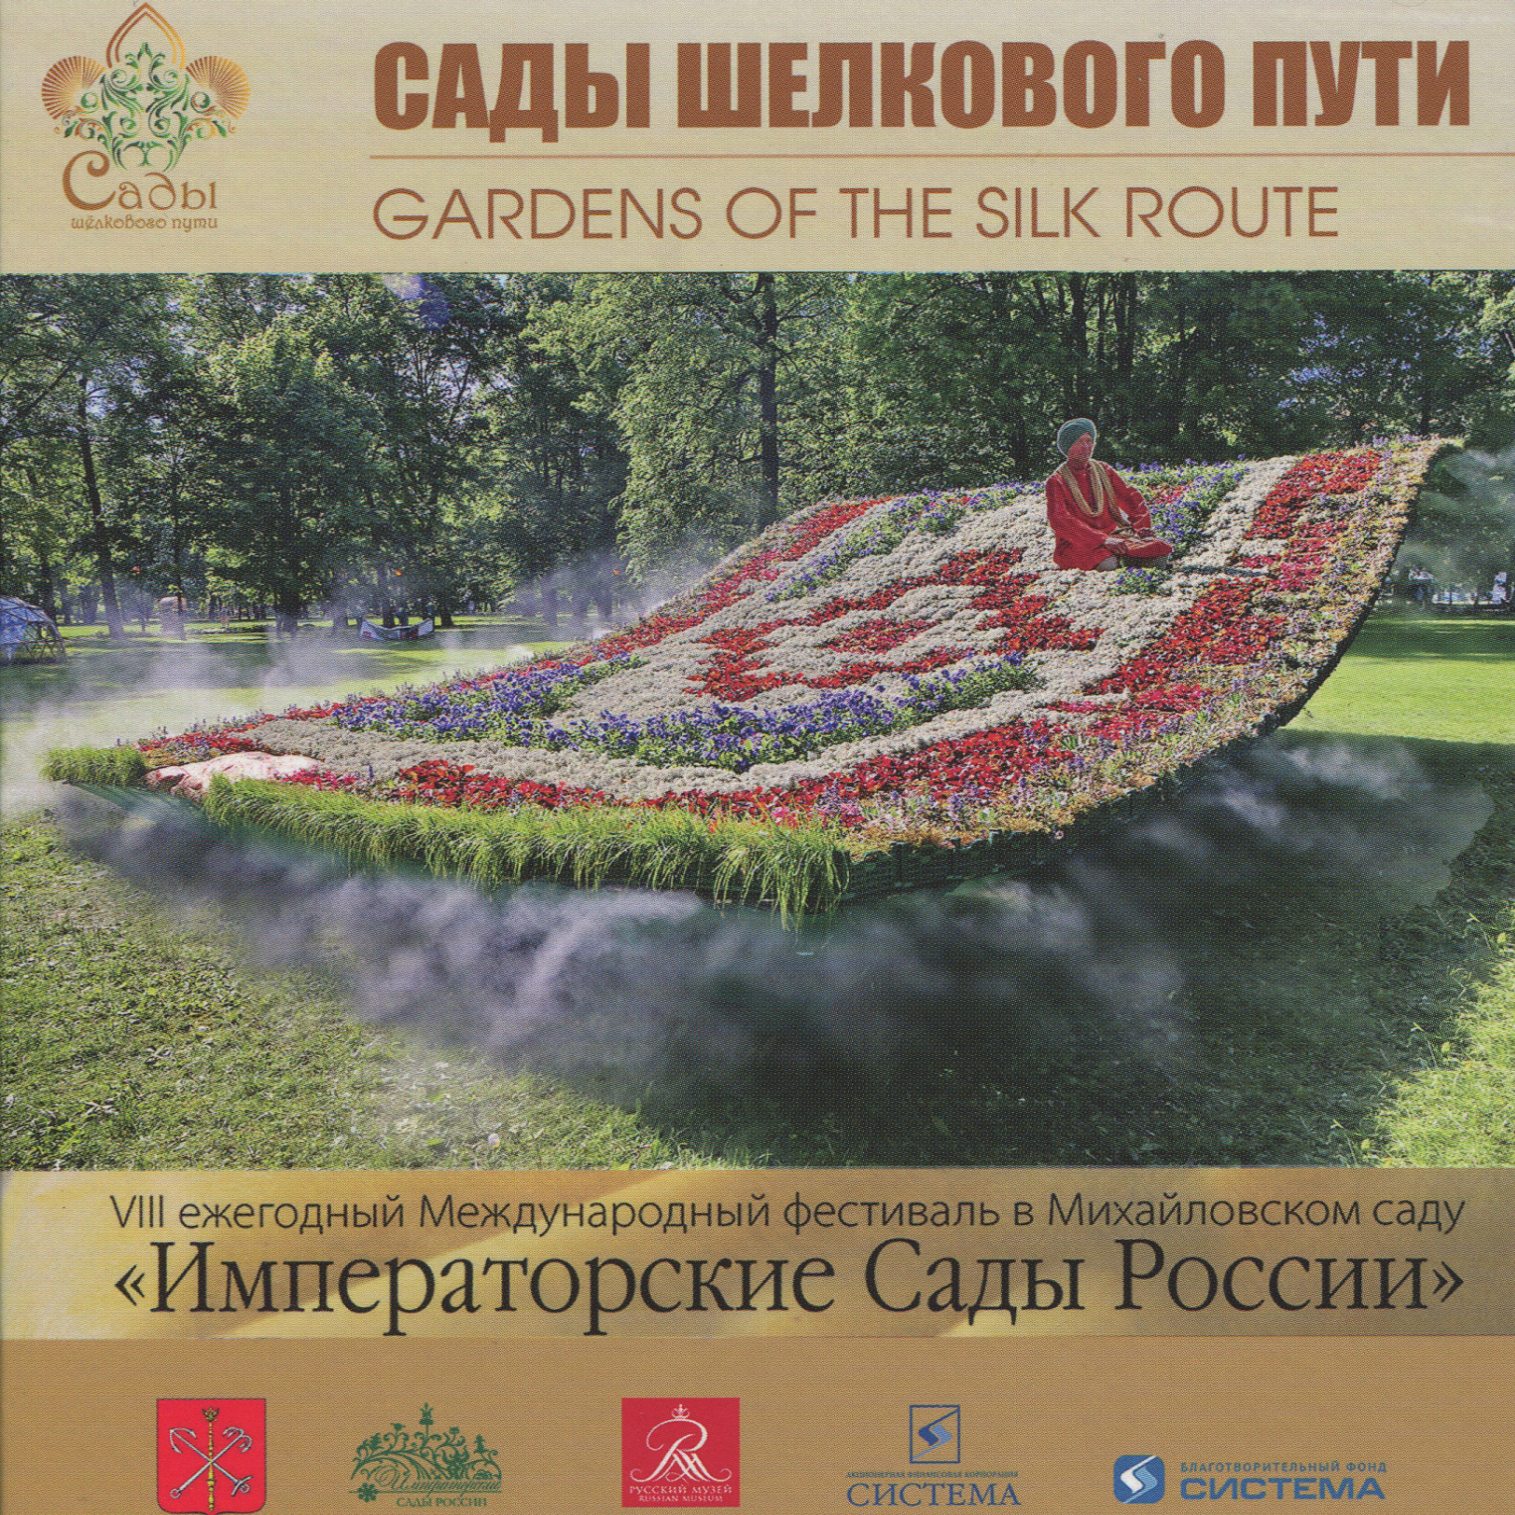 Каталог Фестиваля Императорские сады России 2015